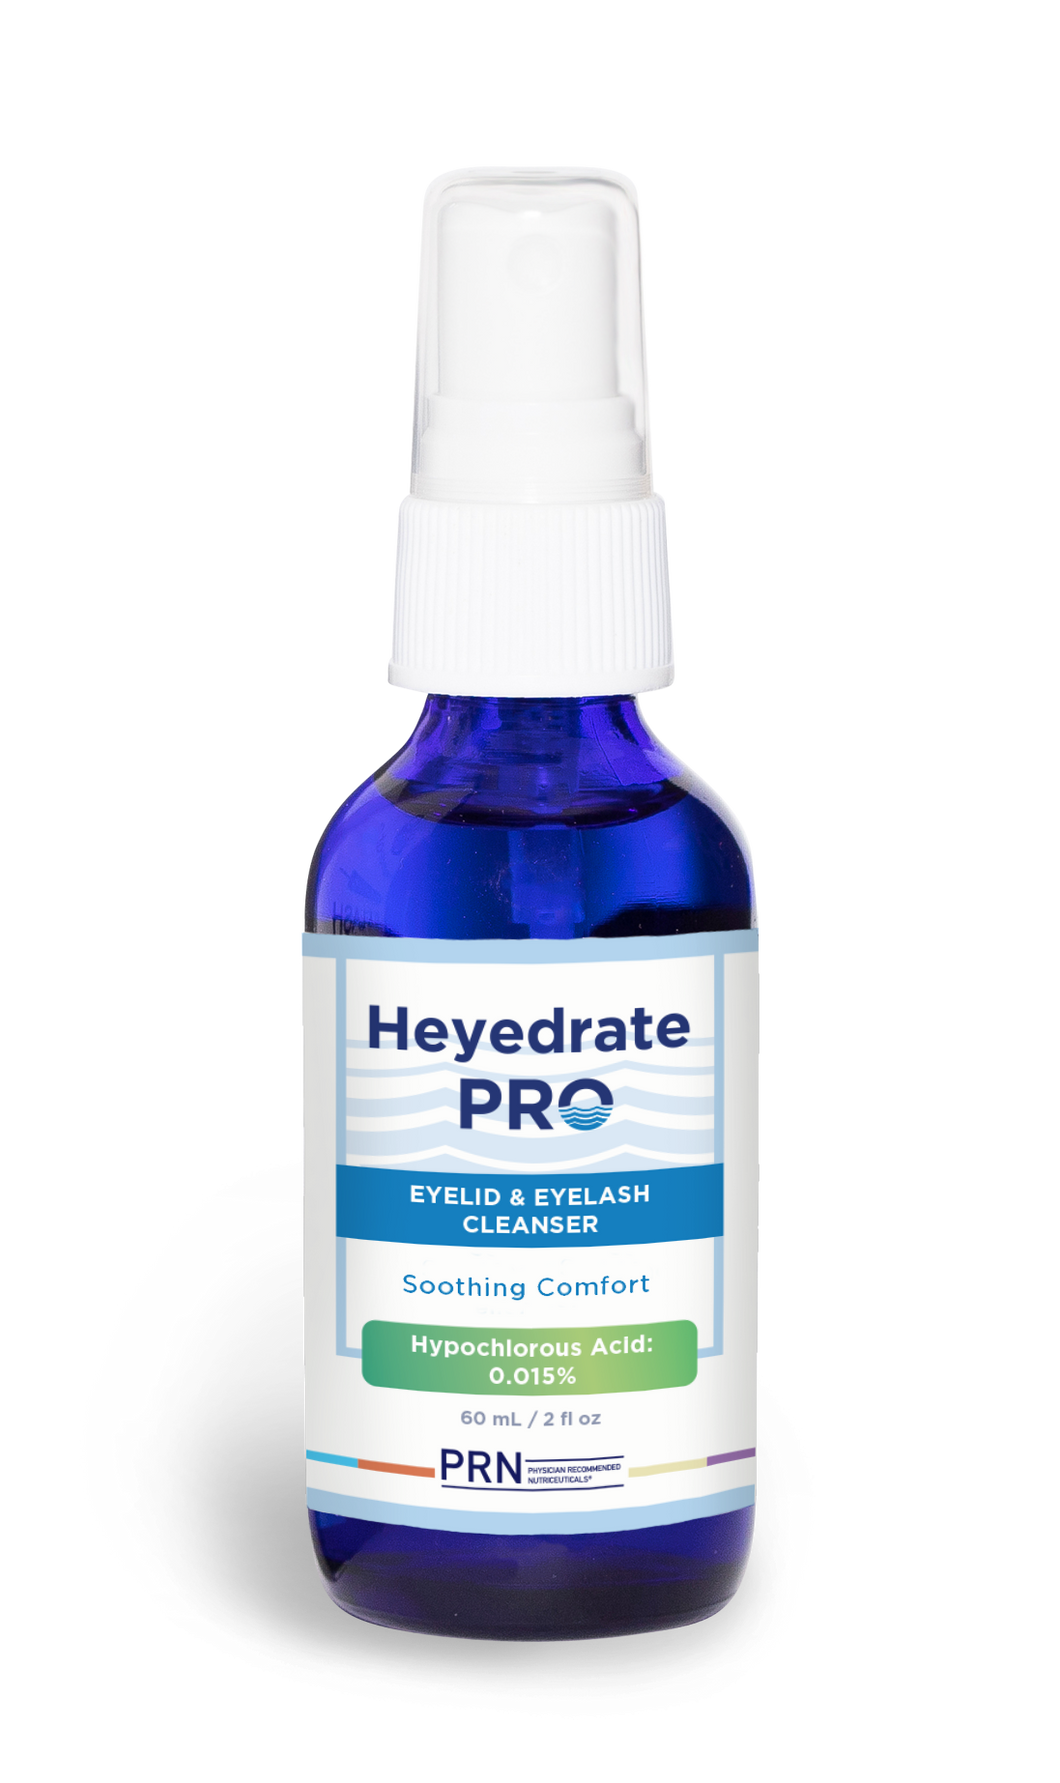 Heyedrate Pro Eyelid & Eyelash Cleanser - 60 ml